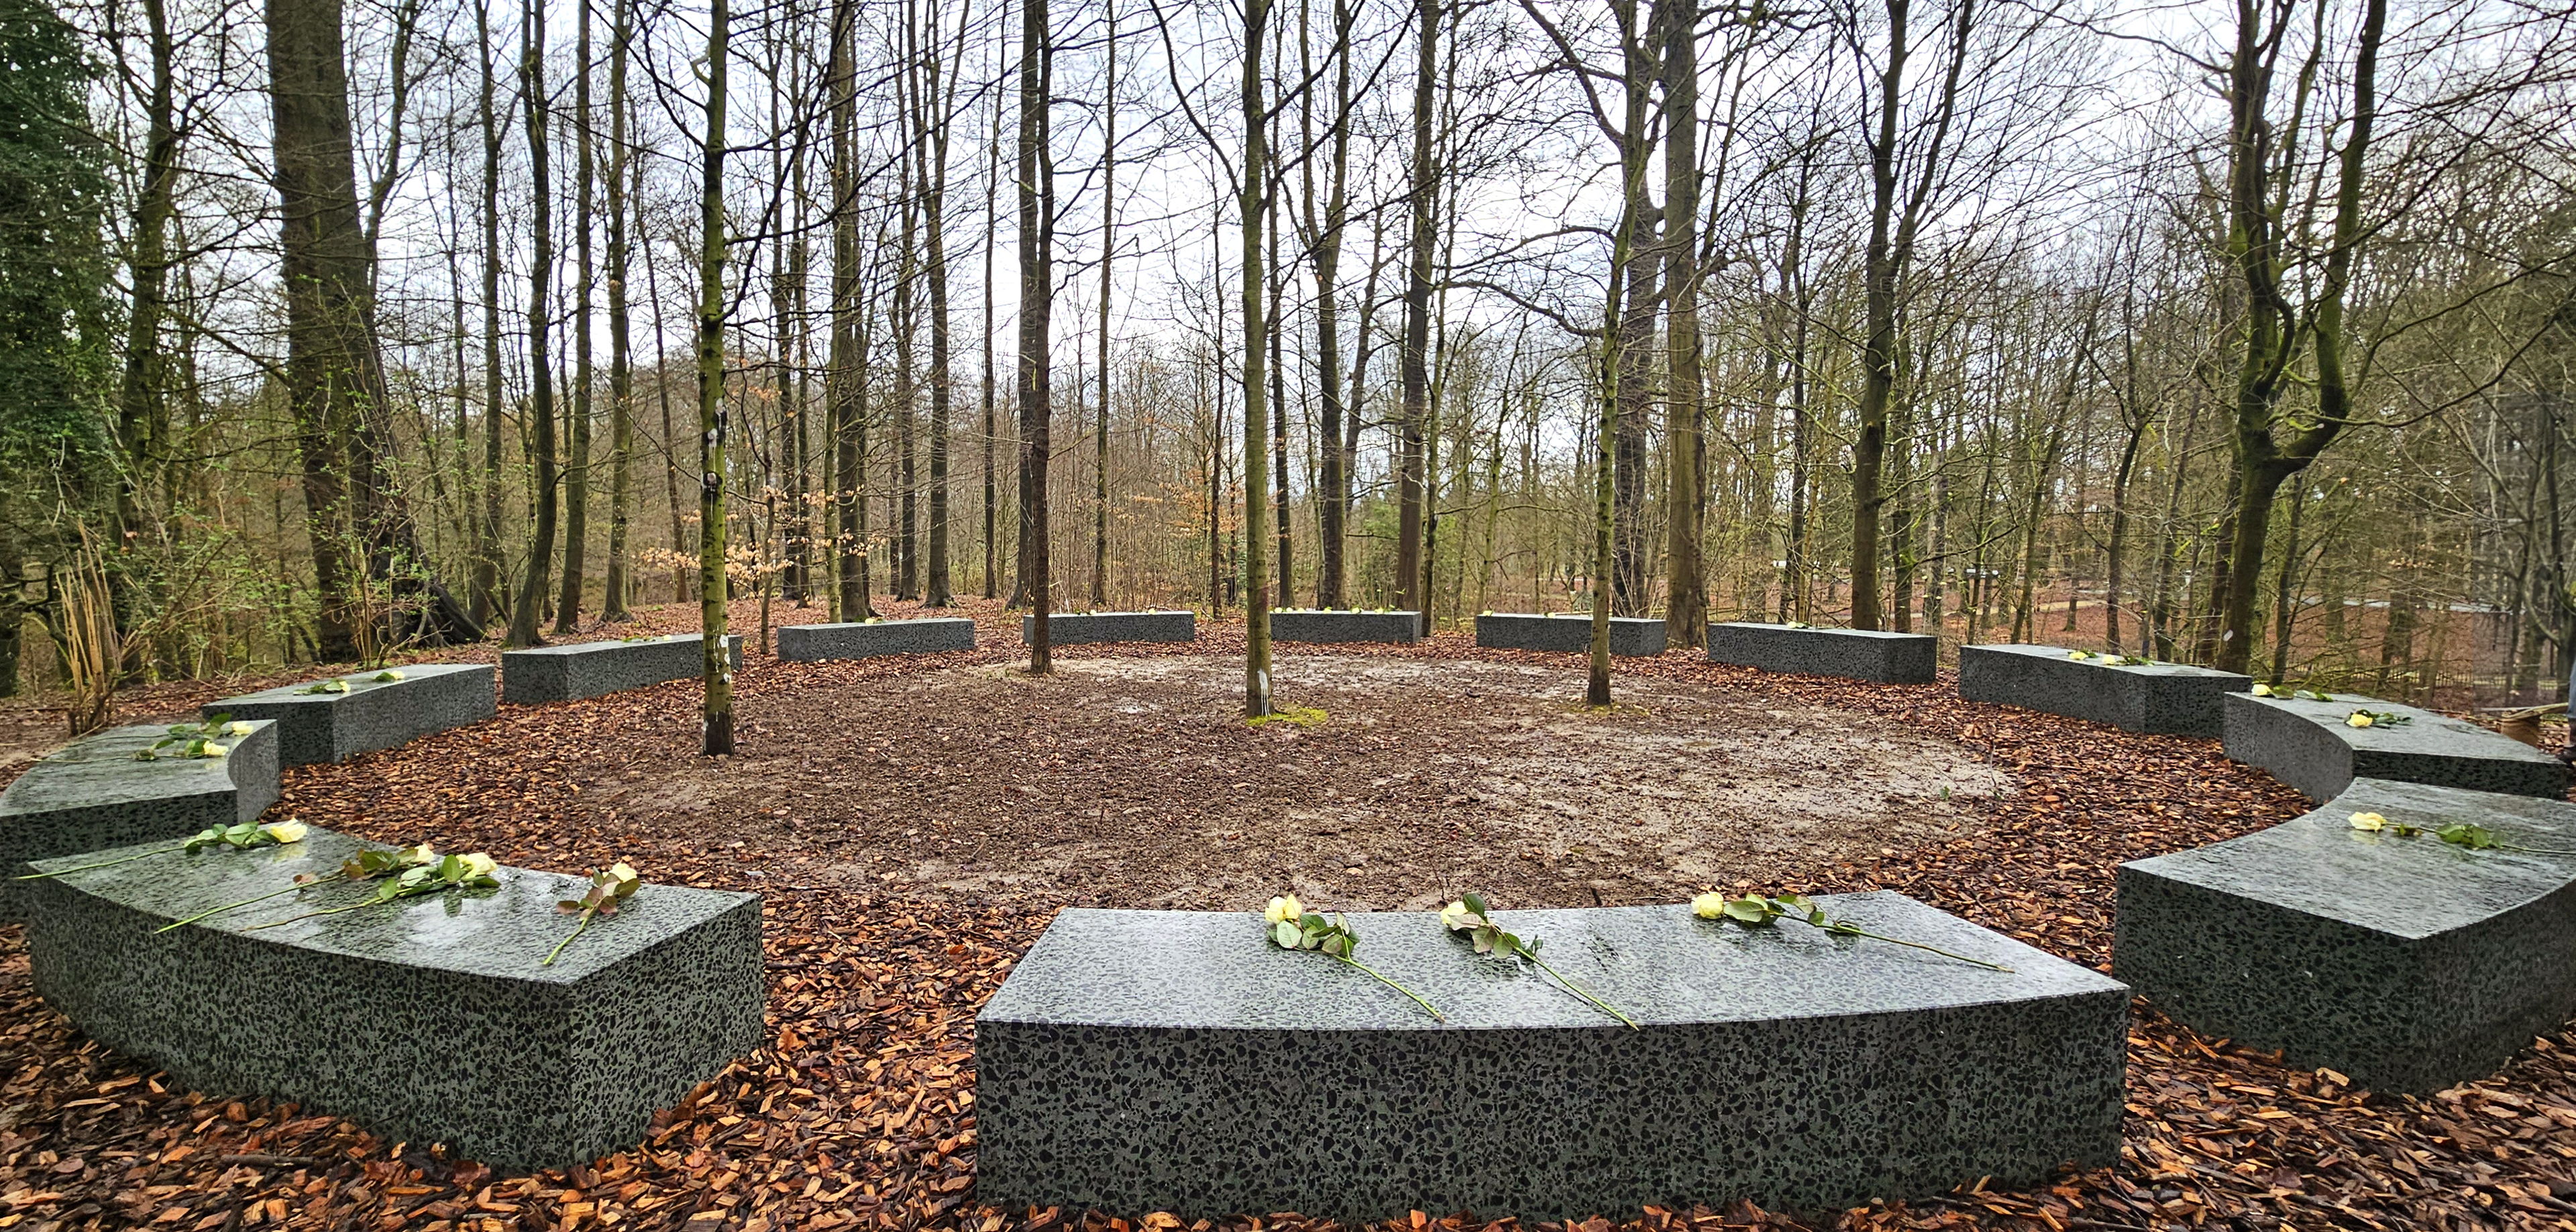  « Onument » ingehuldigd,
een Brussels herdenkingsmonument voor coronaslachtoffers